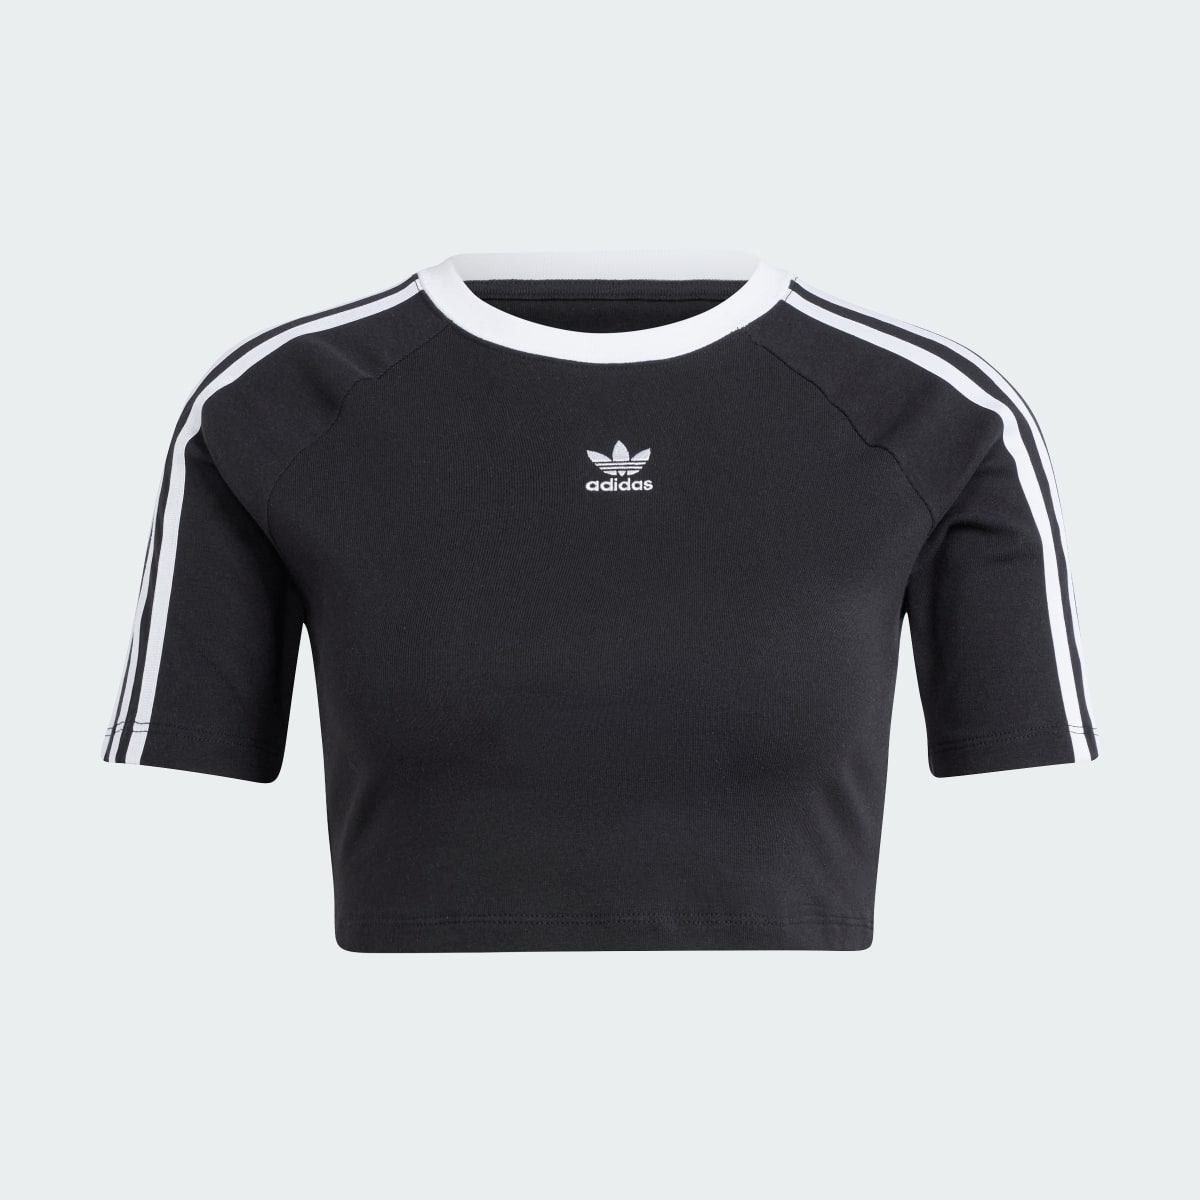 Adidas 3-Streifen Baby T-Shirt. 5